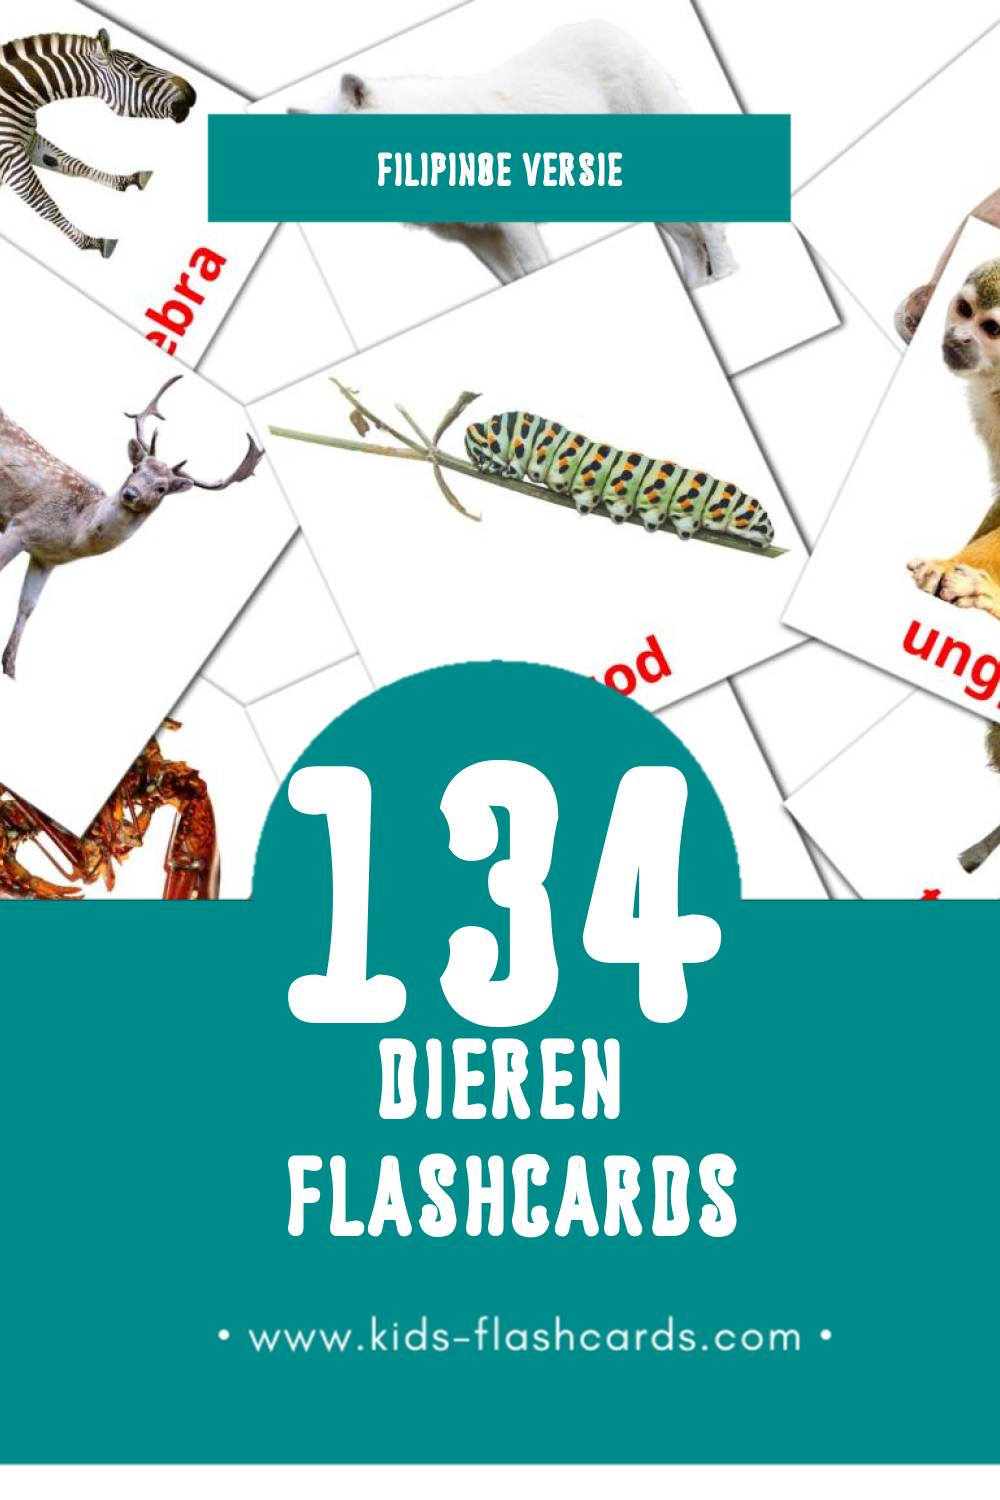 Visuele Hayop Flashcards voor Kleuters (134 kaarten in het Filipino)